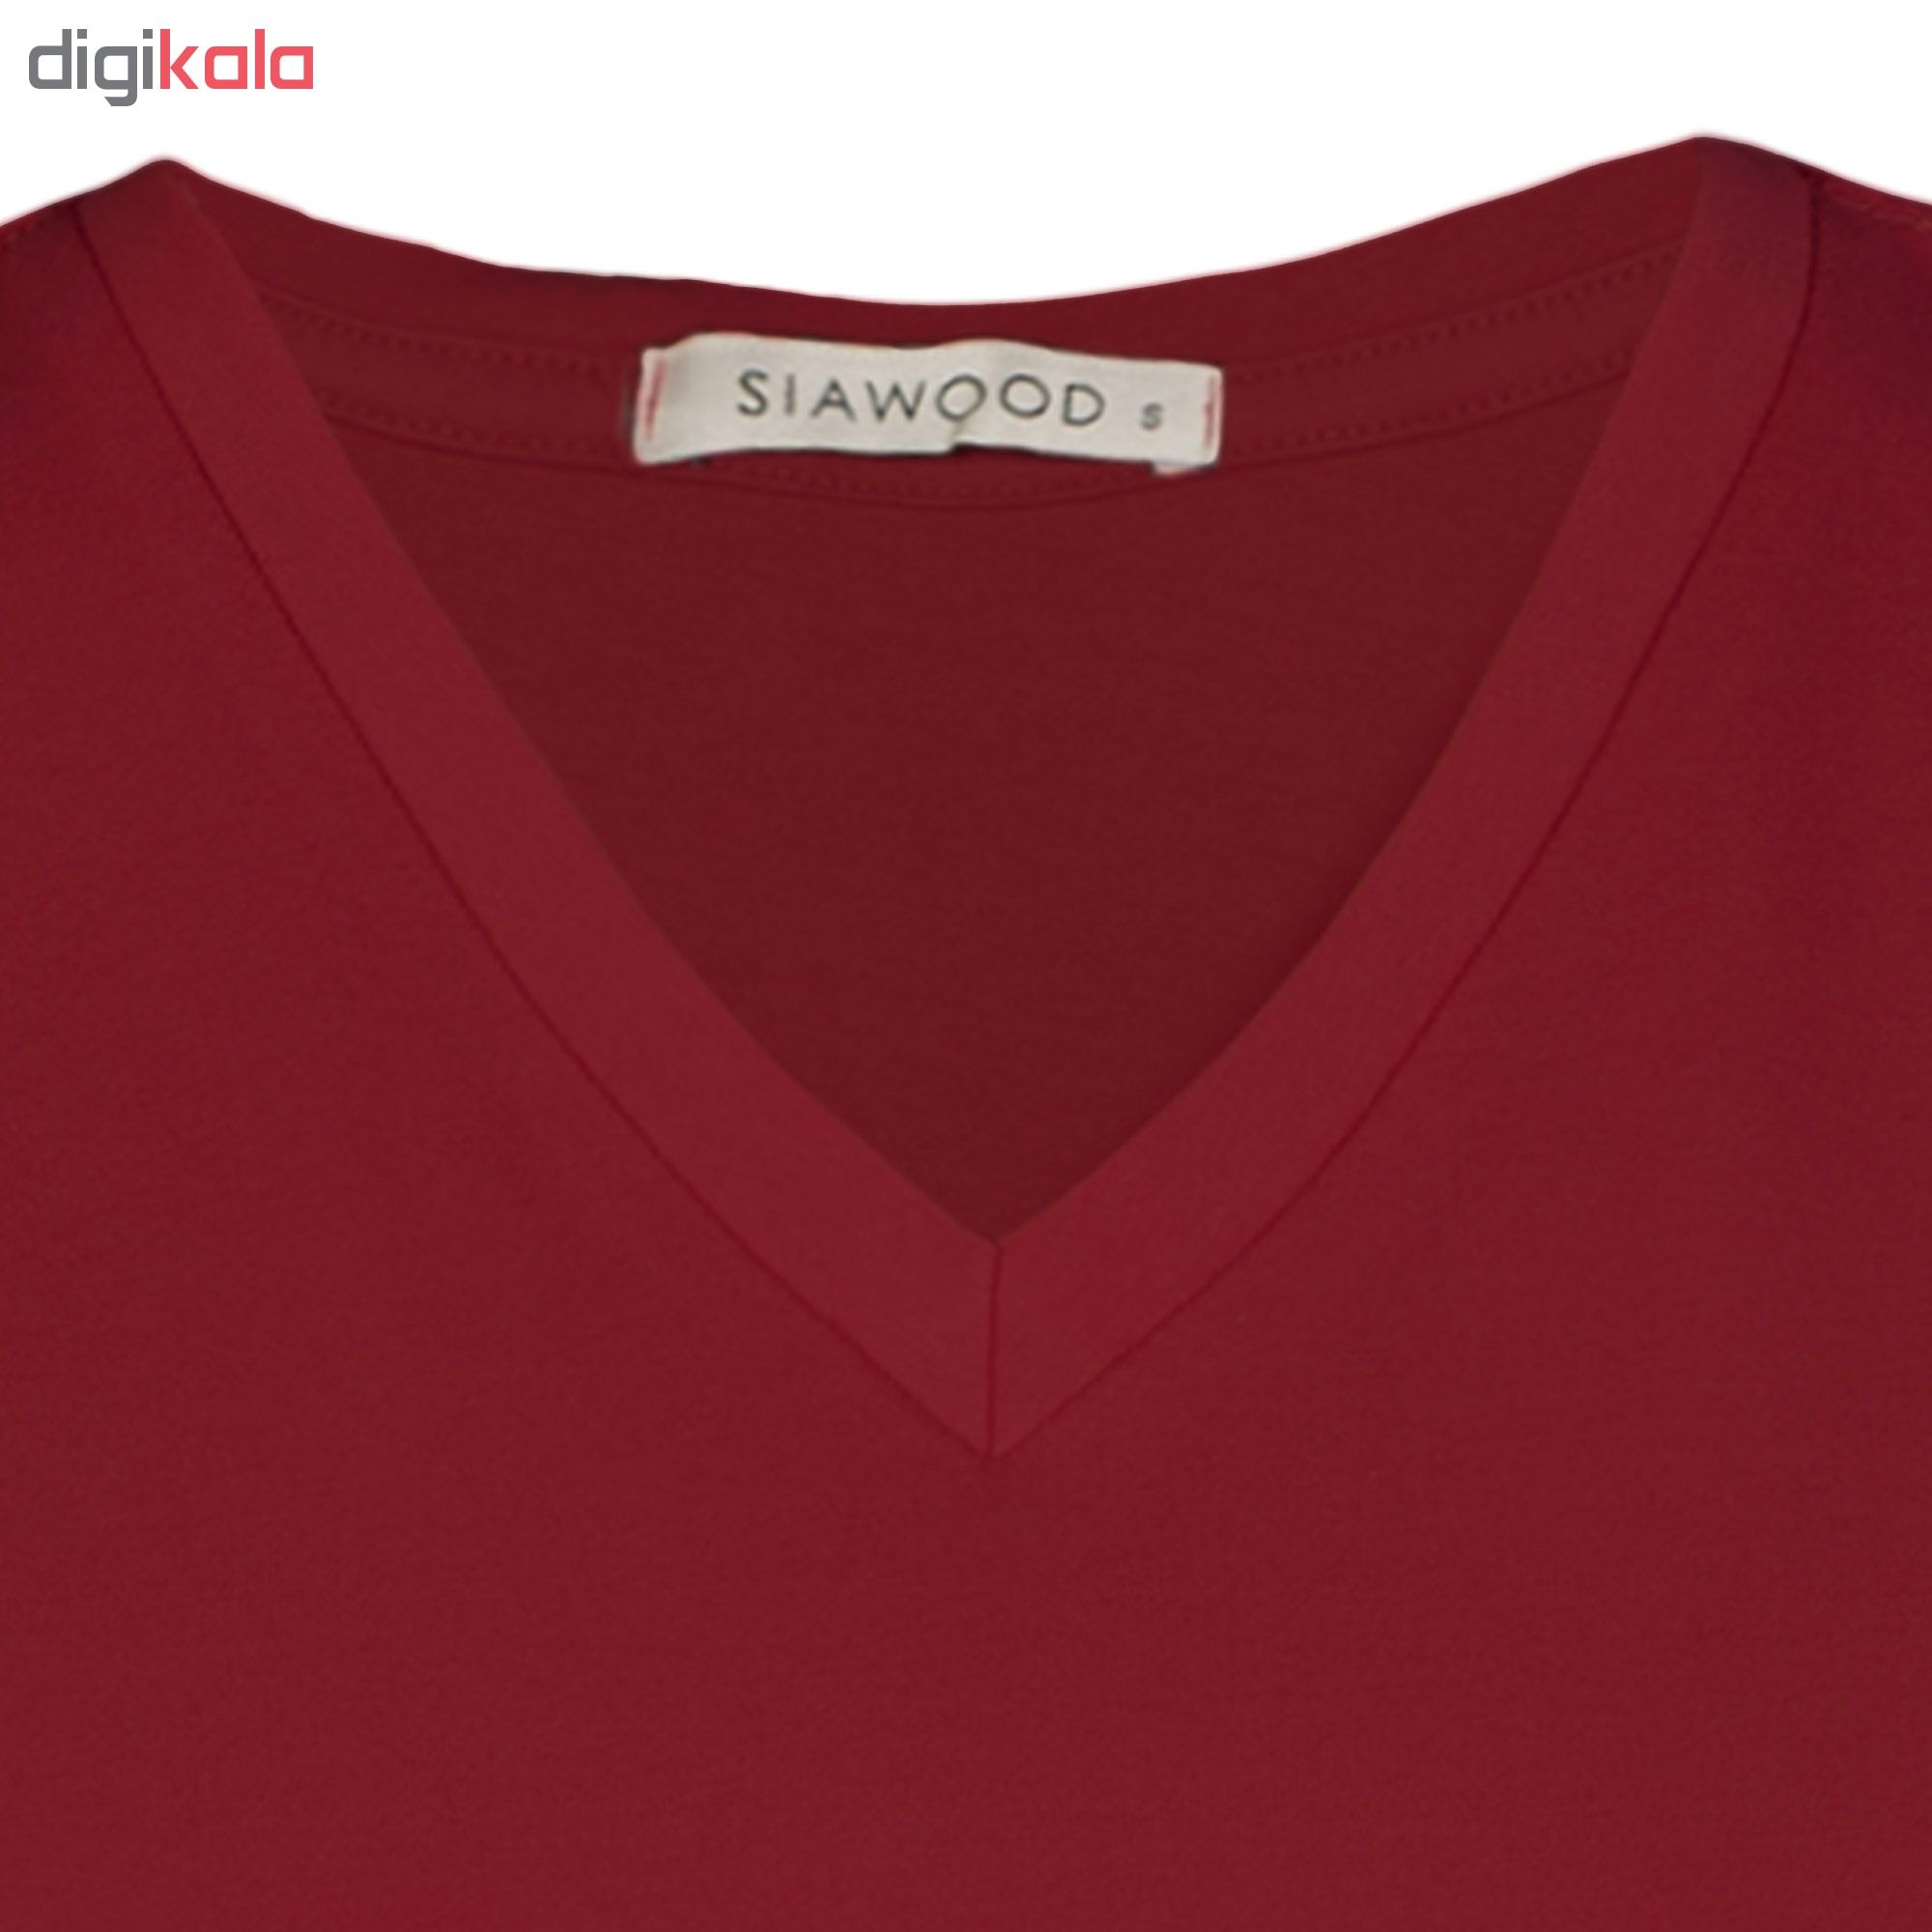 تي شرت زنانه سیاوود مدل V-BASIC کد 6100400-R0211 رنگ زرشکي